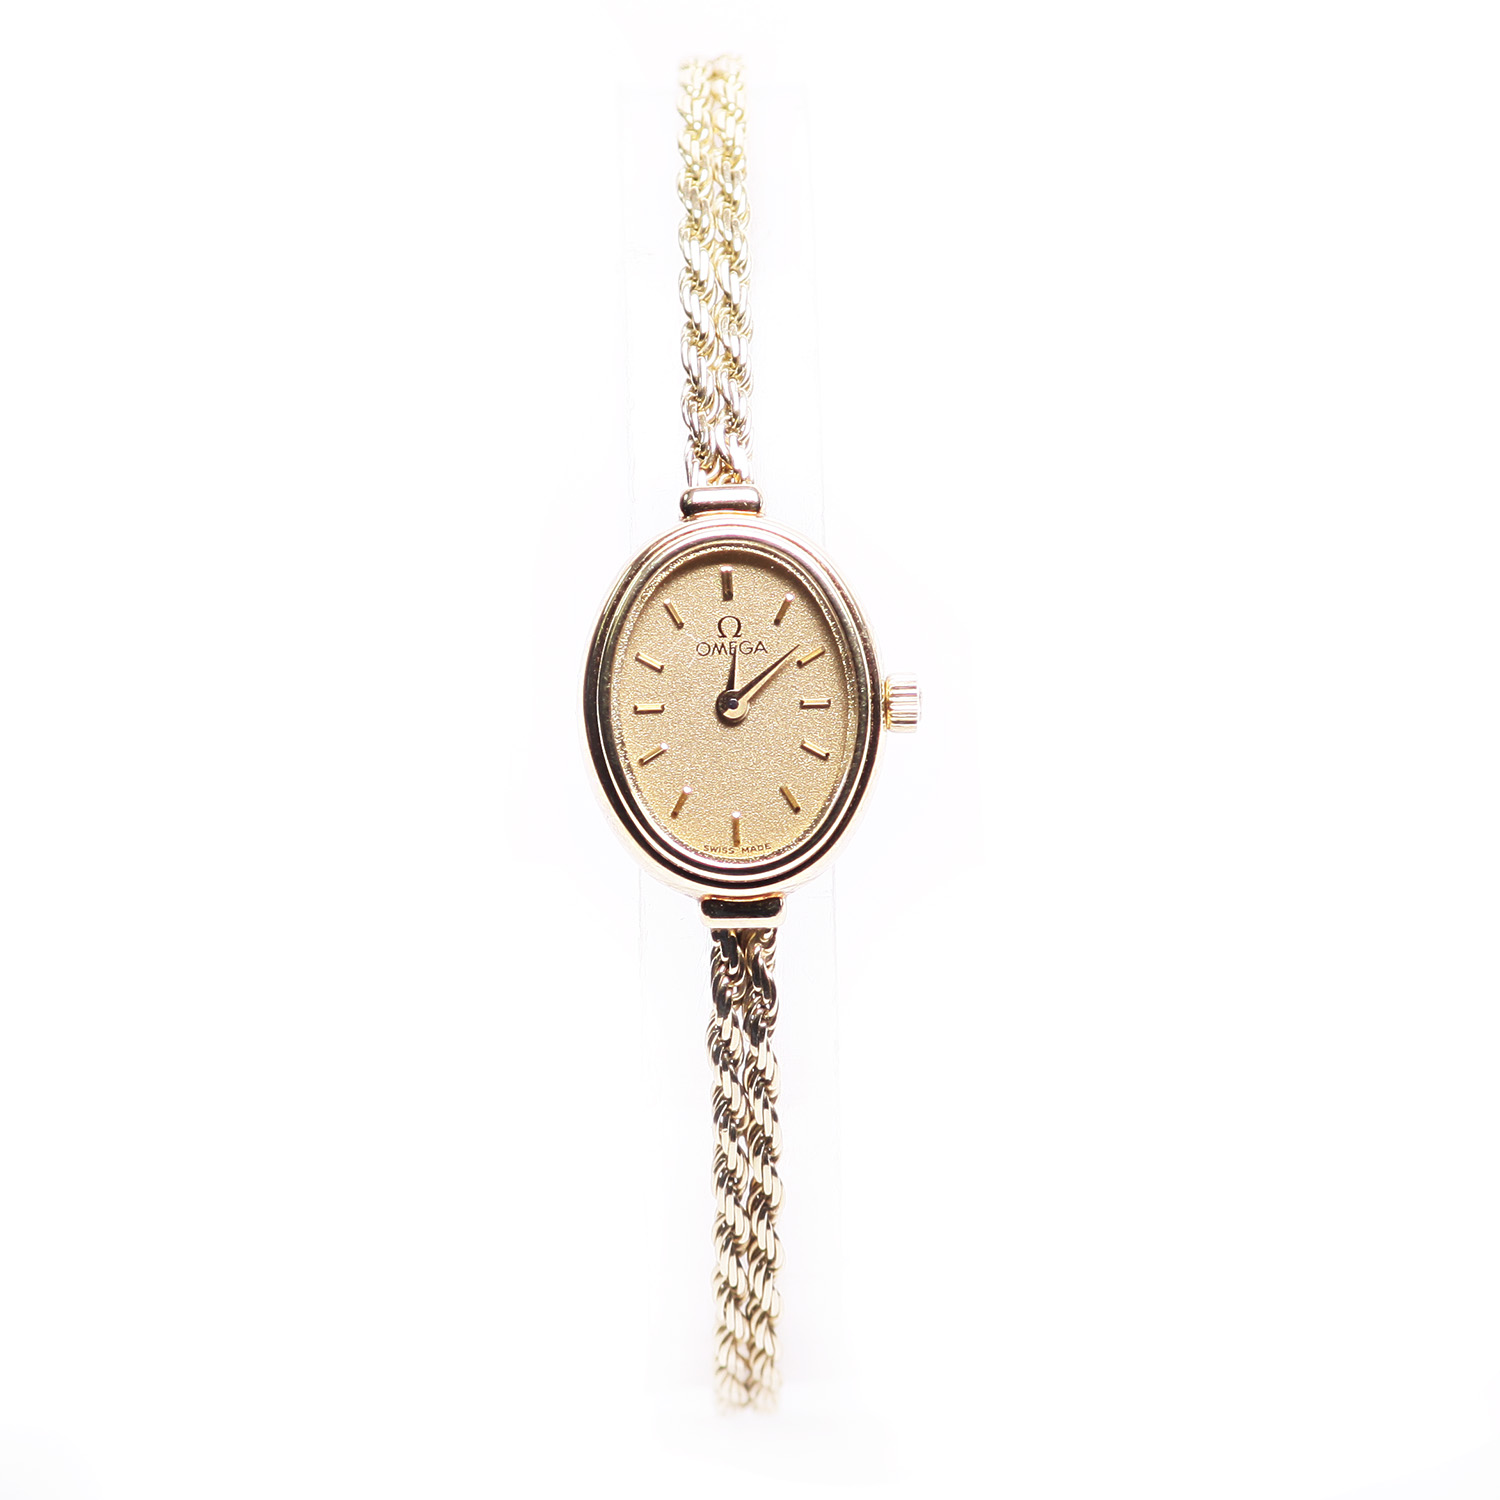 Omega Vintage 14kt Gold Rope Band Quartz Watch | eBay